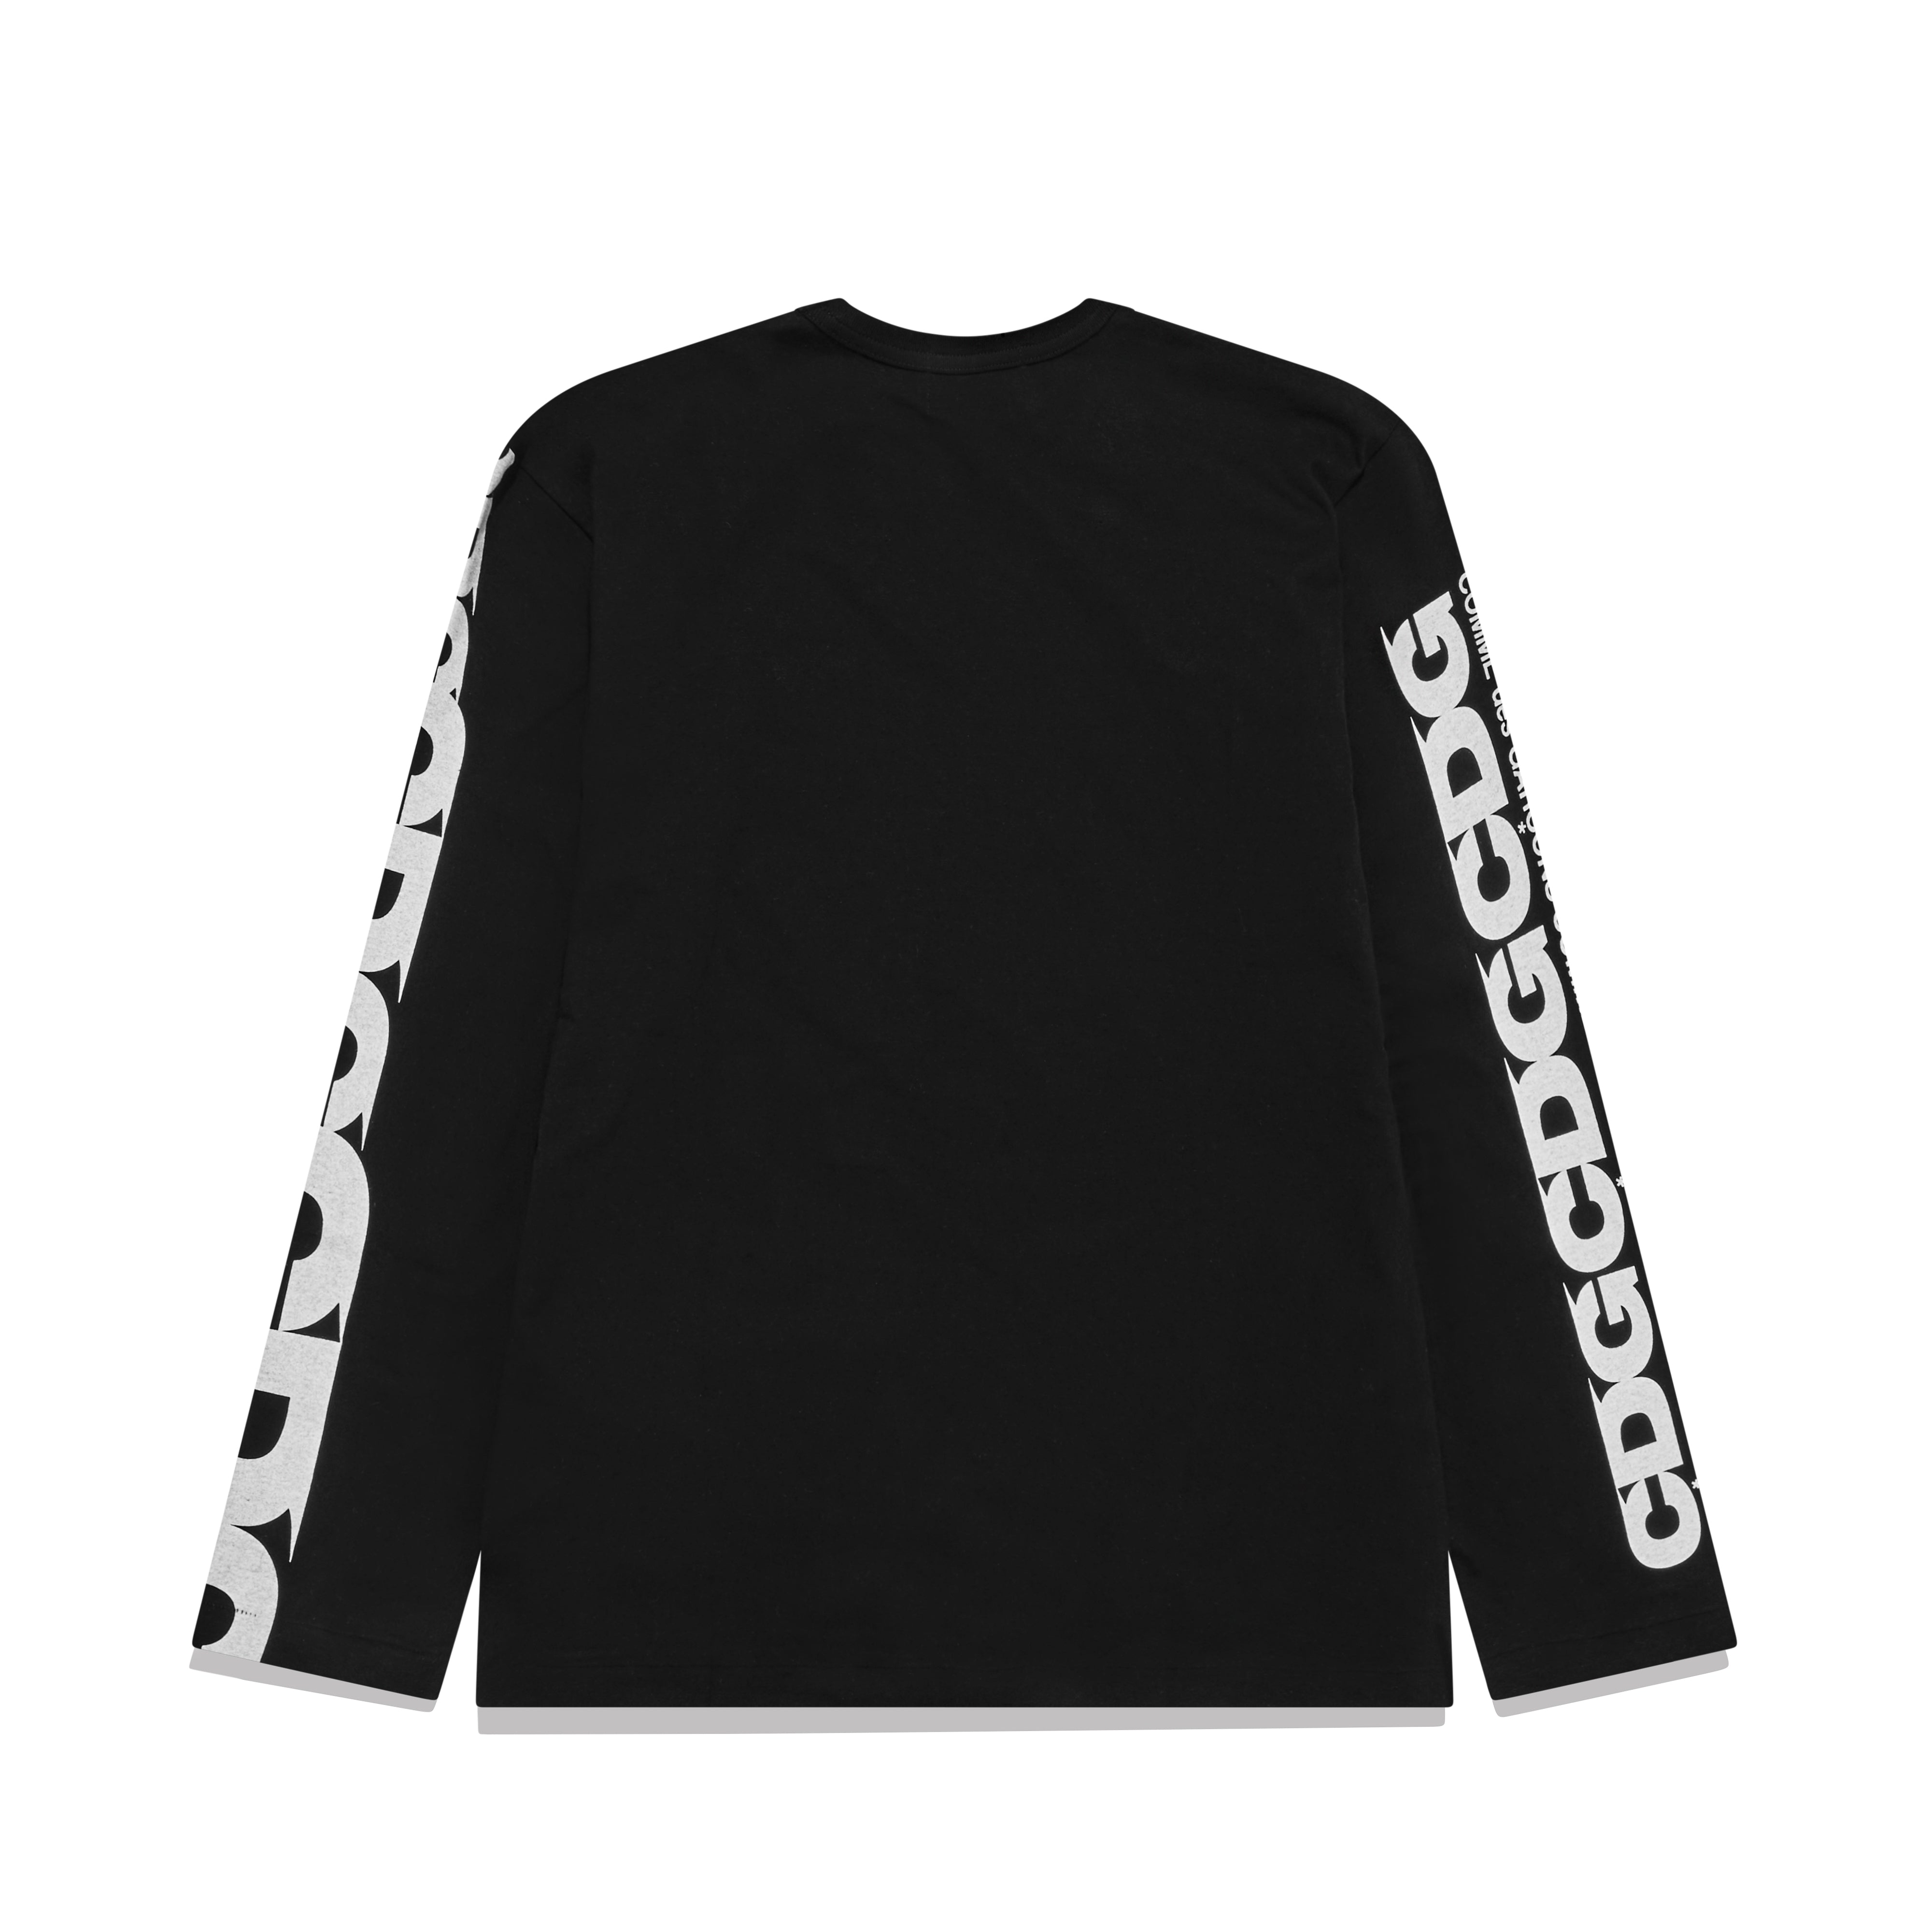 CDG - Long Sleeve T-Shirt - (Black)